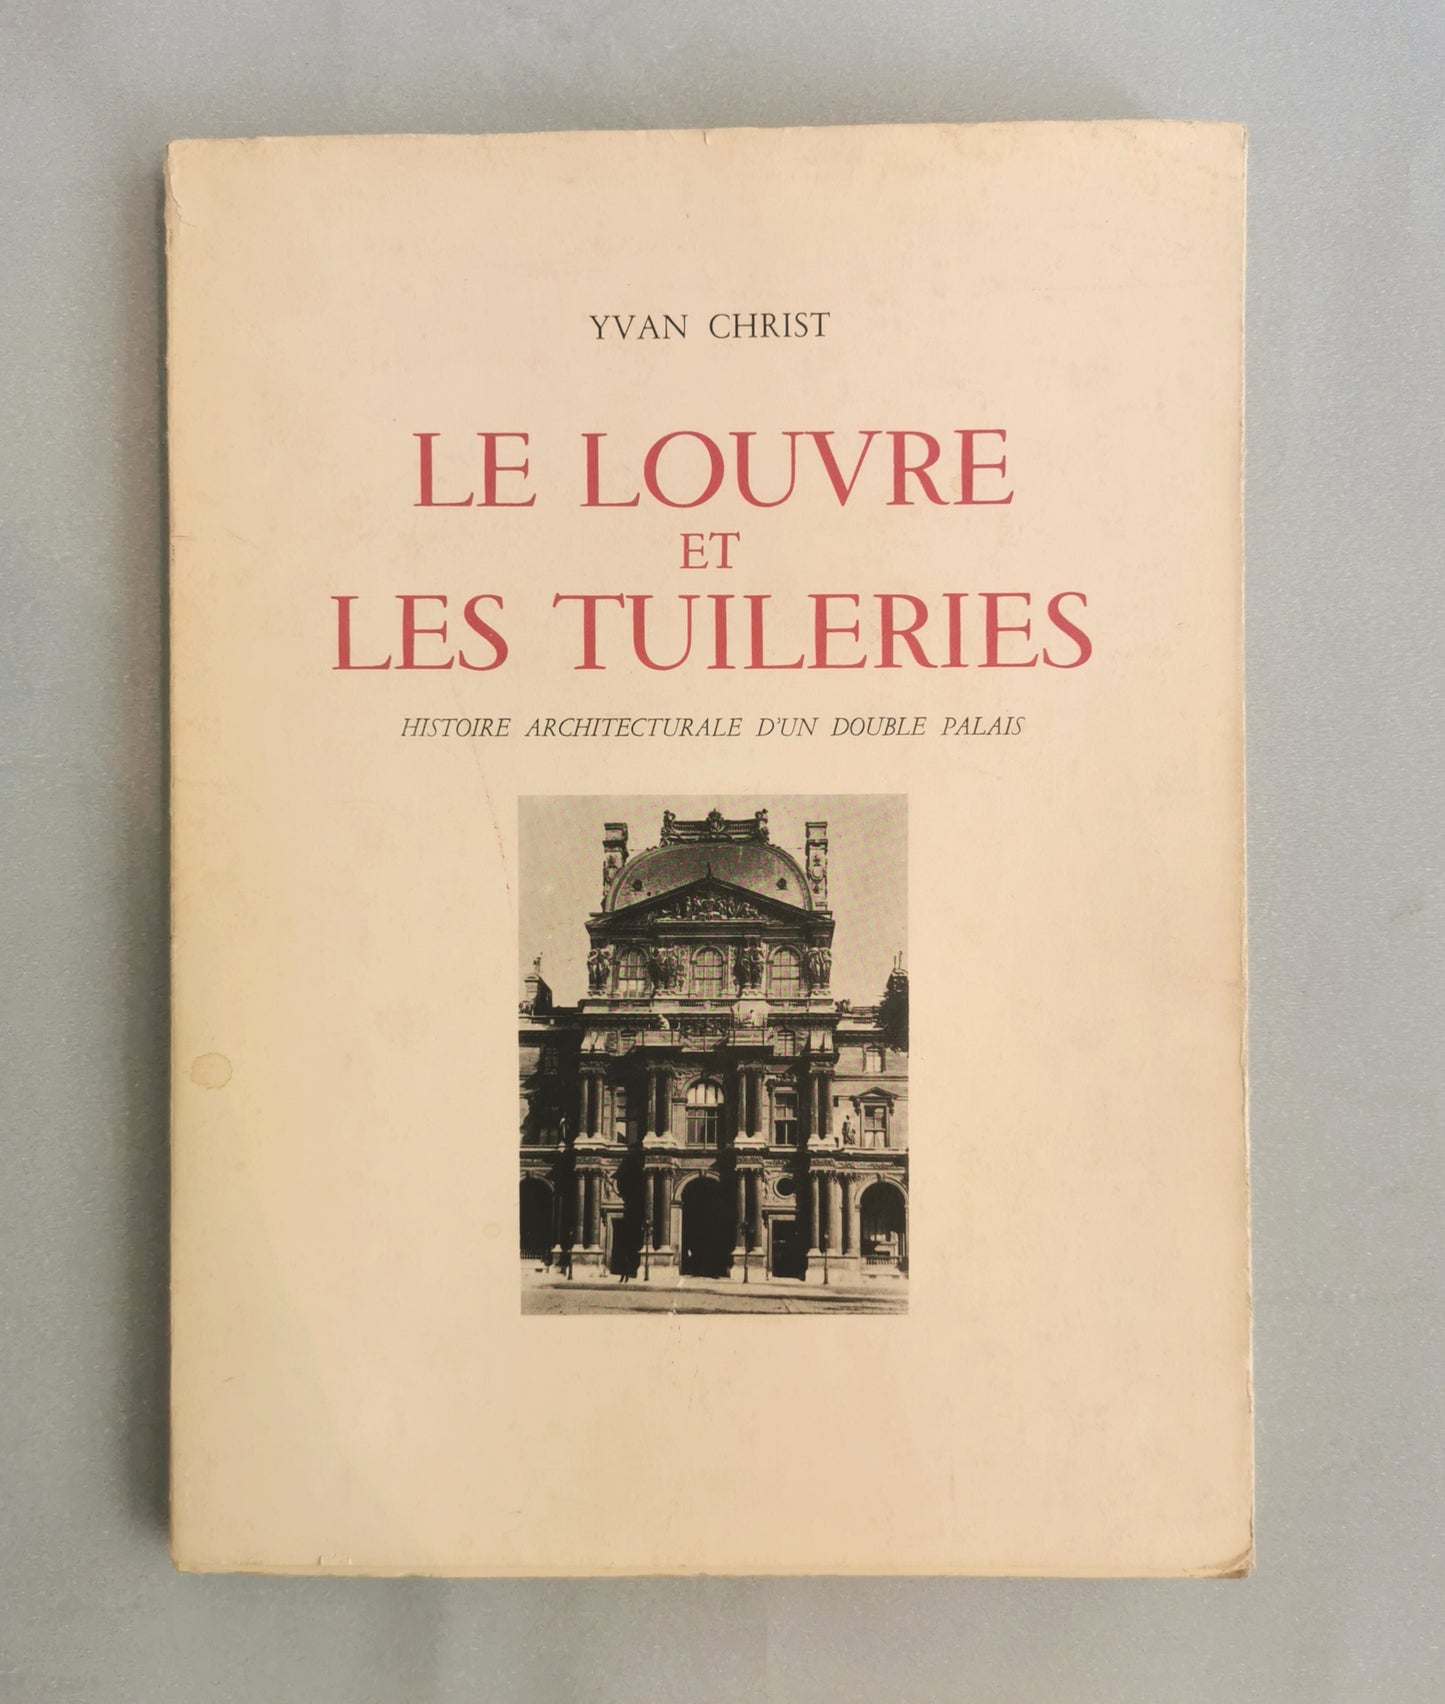 Le Louvre et les Tuileries, Histoire architecturale d'un double palais, Yvan Christ, Photographies de Sougez, Editions Tel, 1949.